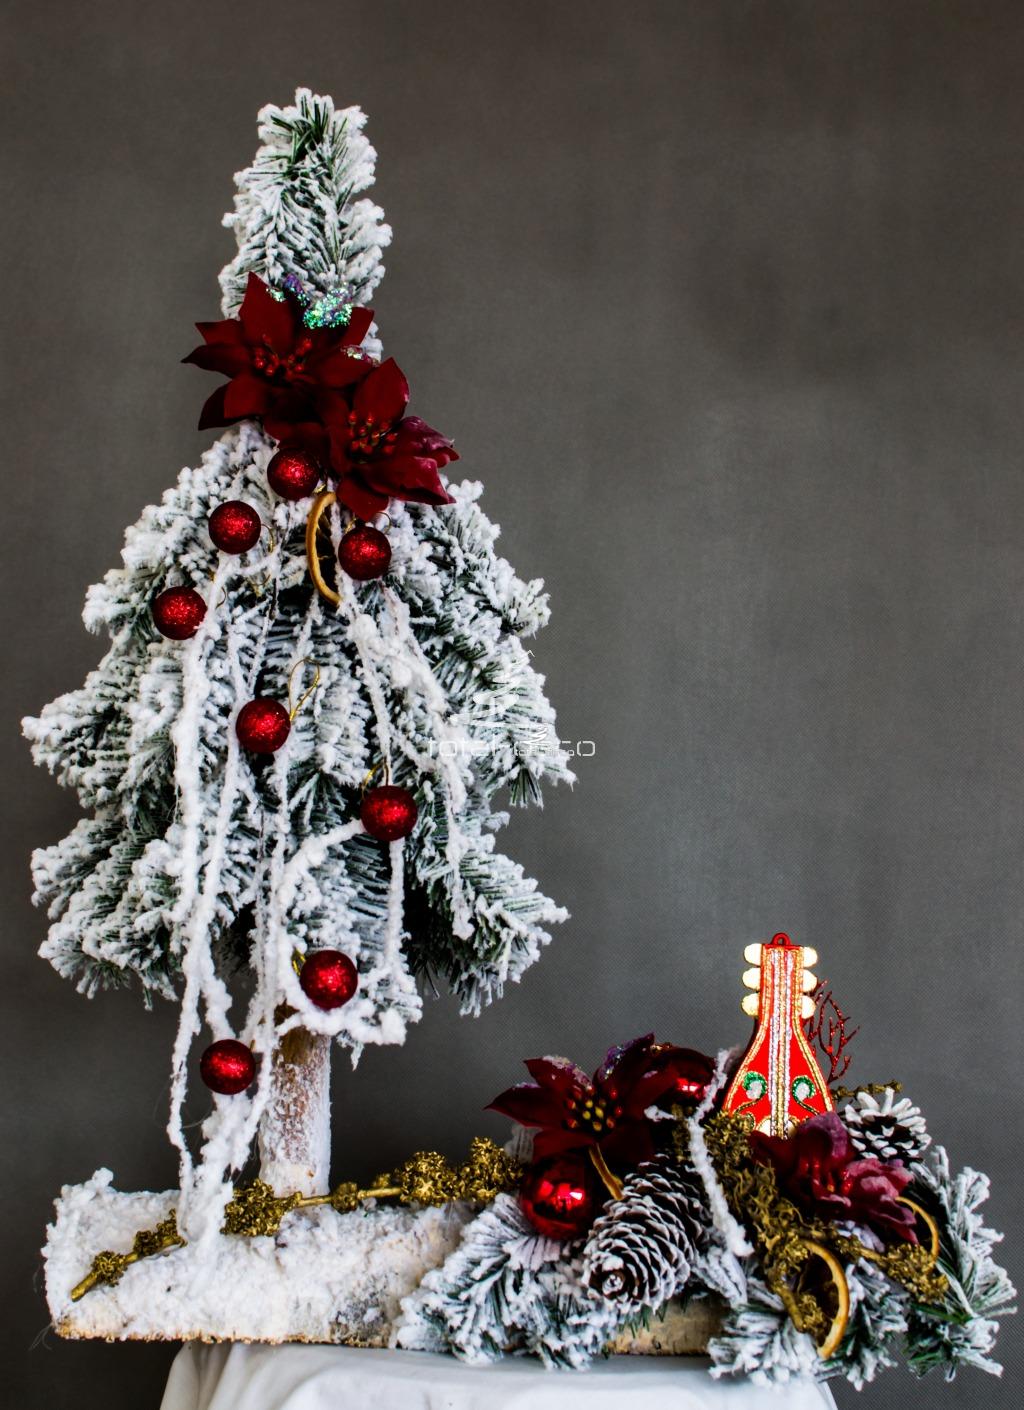 nowoczesny oryginalny stroik choinka ubrana na biało na czerwono na drewnianej podstawie ubrana ozdobiona dekoracja bożonarodzeniowa świąteczna